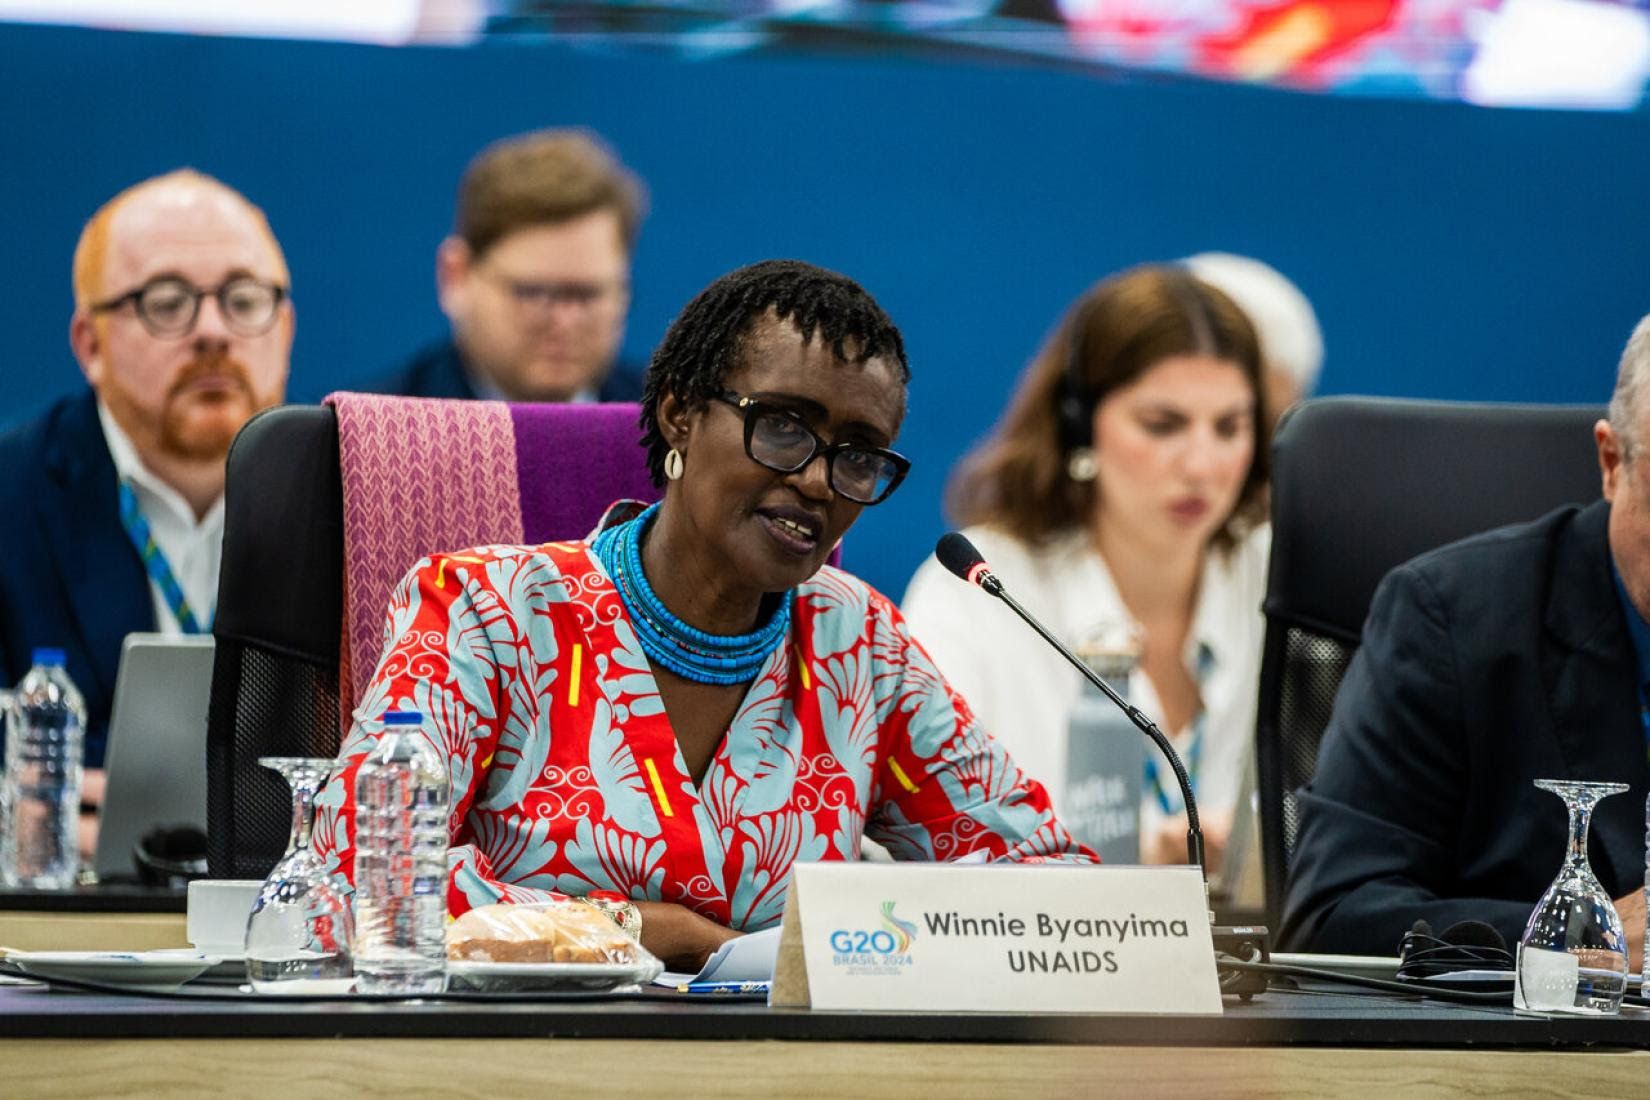 Subsecretária-geral das Nações Unidas e Diretora Executiva do UNAIDS, Winnie Byanyima, apelou aos governos reunidos em reunião do G20 a apoiarem uma nova Aliança em prol da produção de medicamentos.